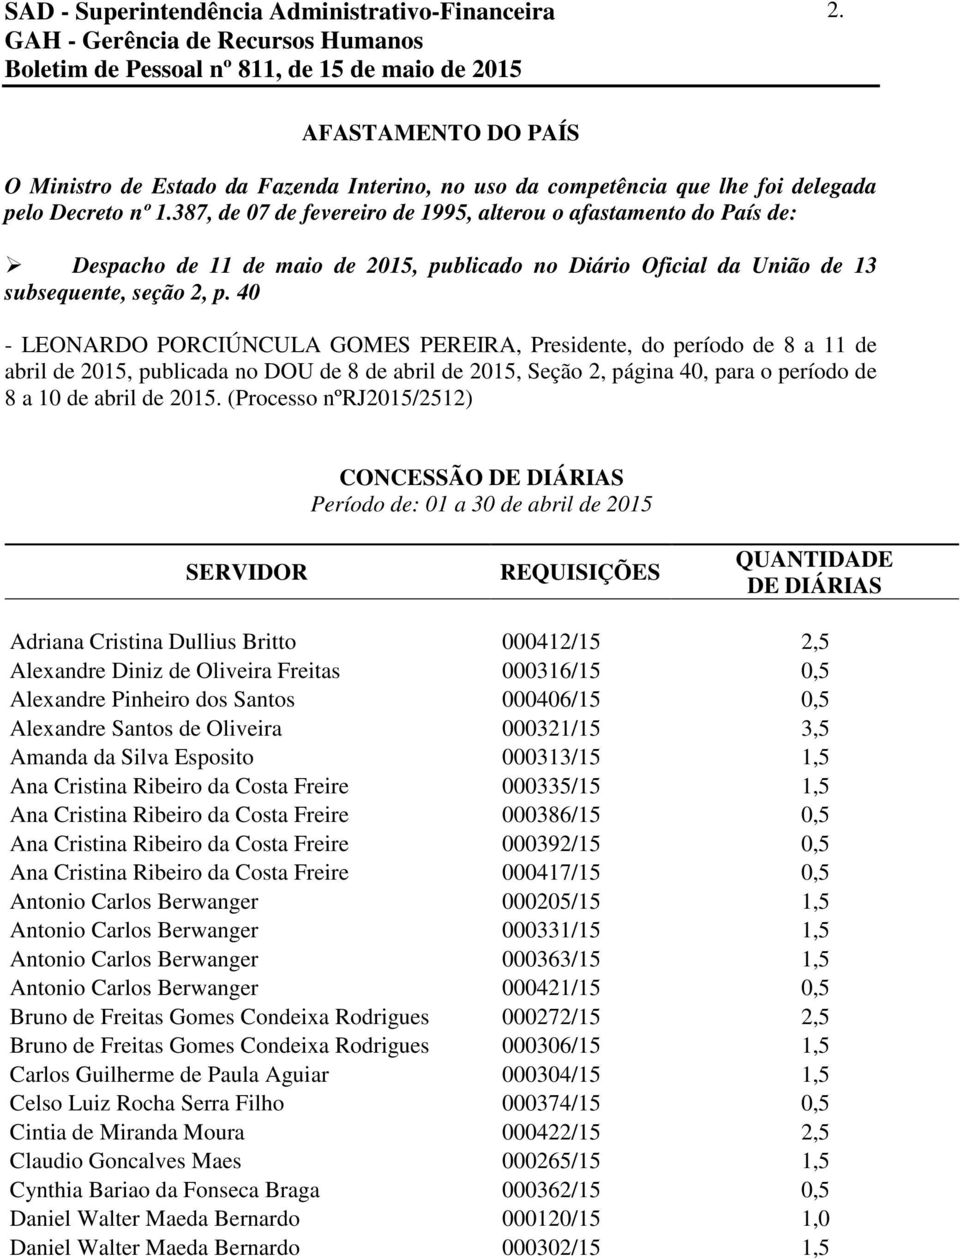 40 - LEONARDO PORCIÚNCULA GOMES PEREIRA, Presidente, do período de 8 a 11 de abril de 2015, publicada no DOU de 8 de abril de 2015, Seção 2, página 40, para o período de 8 a 10 de abril de 2015.